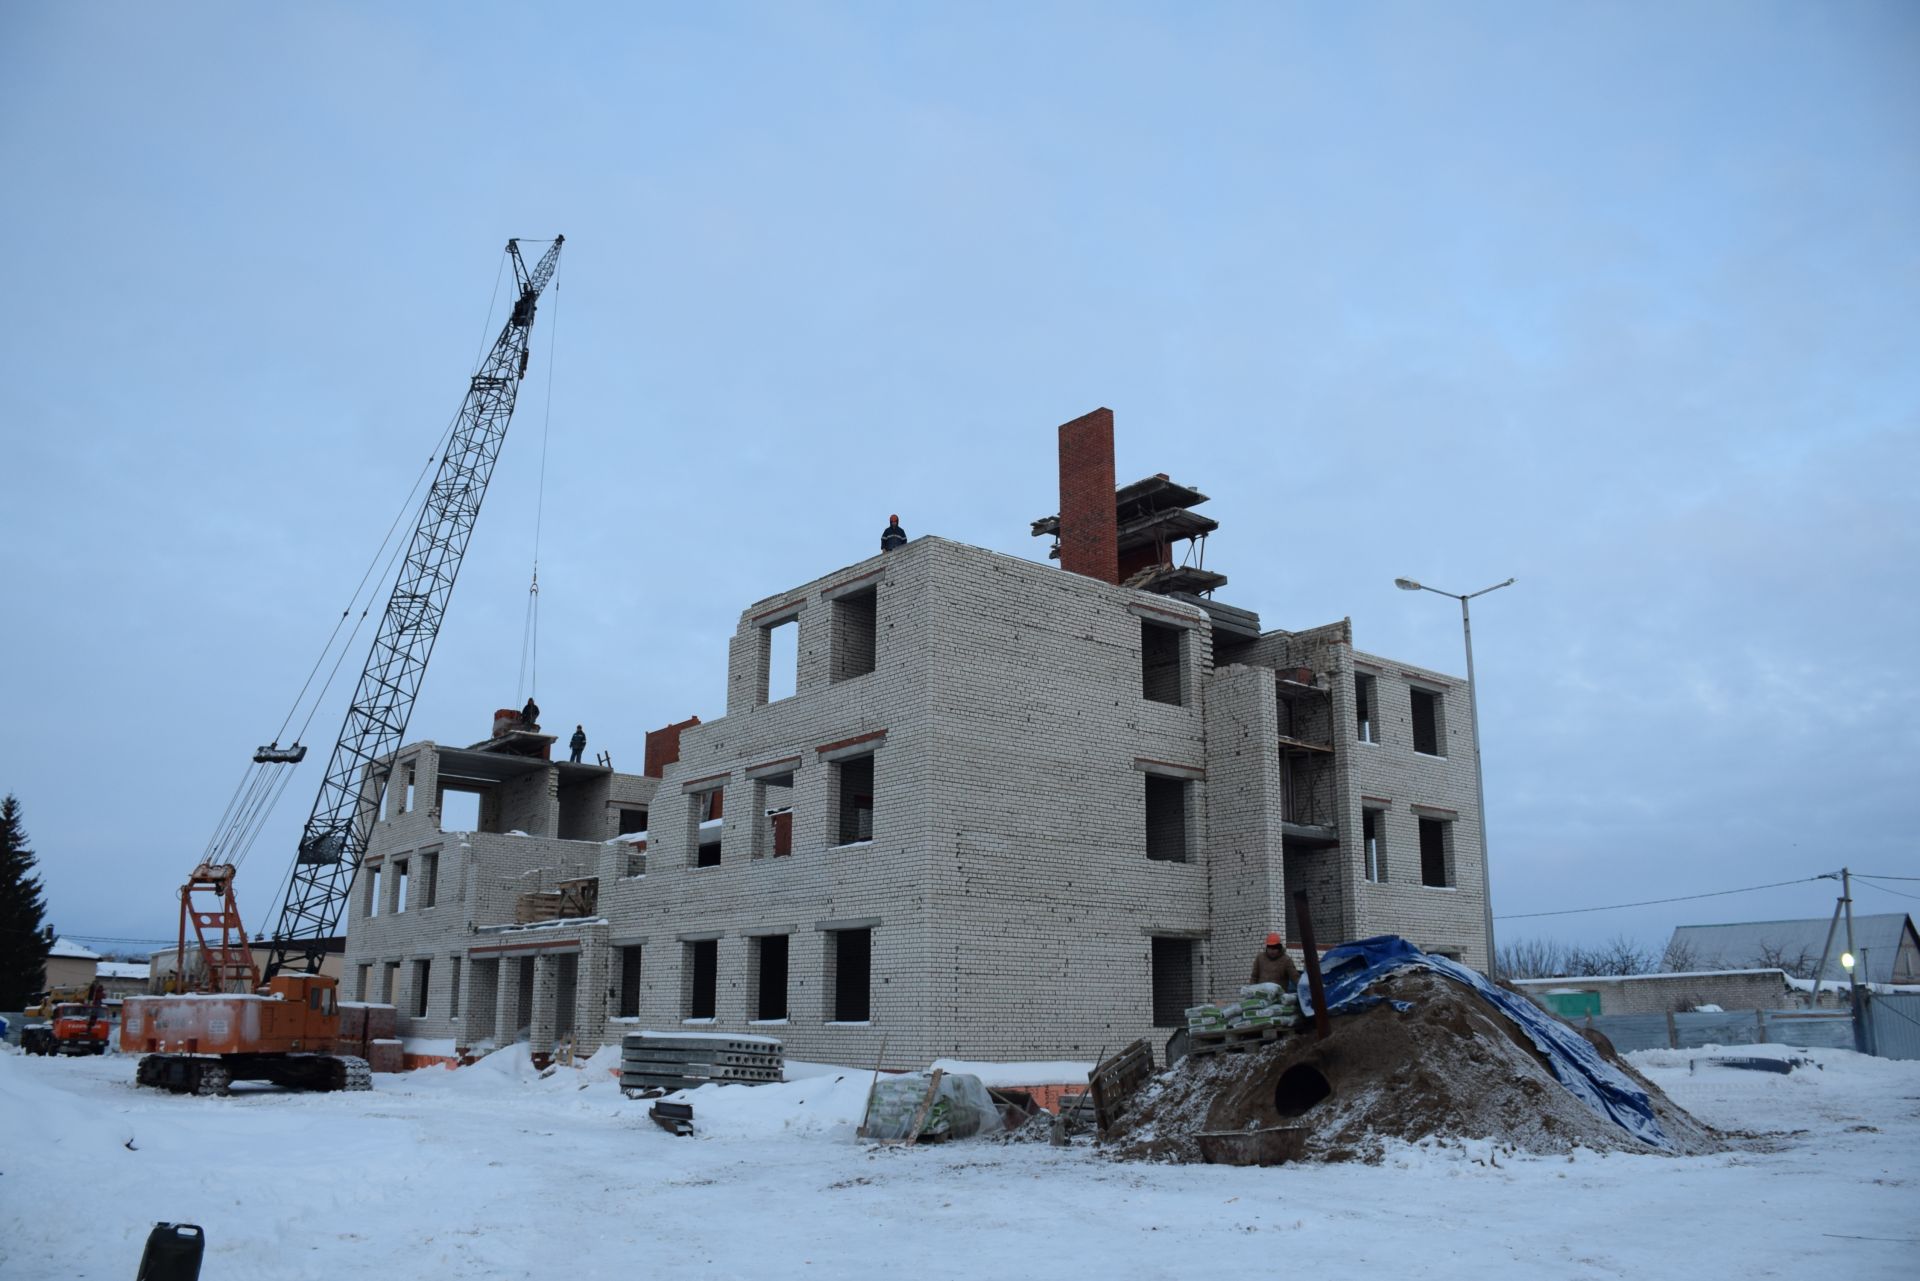 Алмаз Ахметшин рабочий день начал на важном строительном объекте